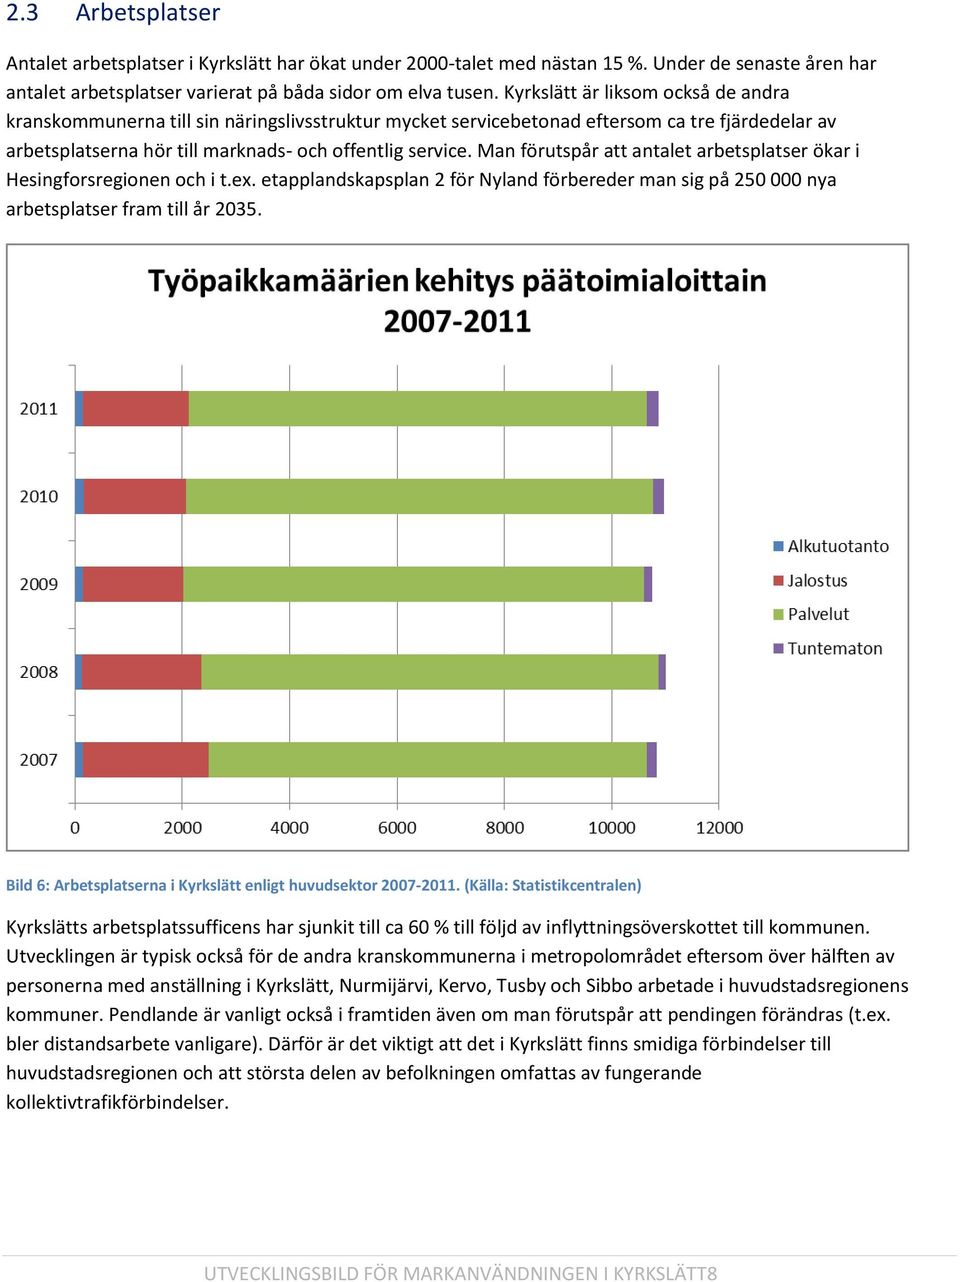 Man förutspår att antalet arbetsplatser ökar i Hesingforsregionen och i t.ex. etapplandskapsplan 2 för Nyland förbereder man sig på 250 000 nya arbetsplatser fram till år 2035.